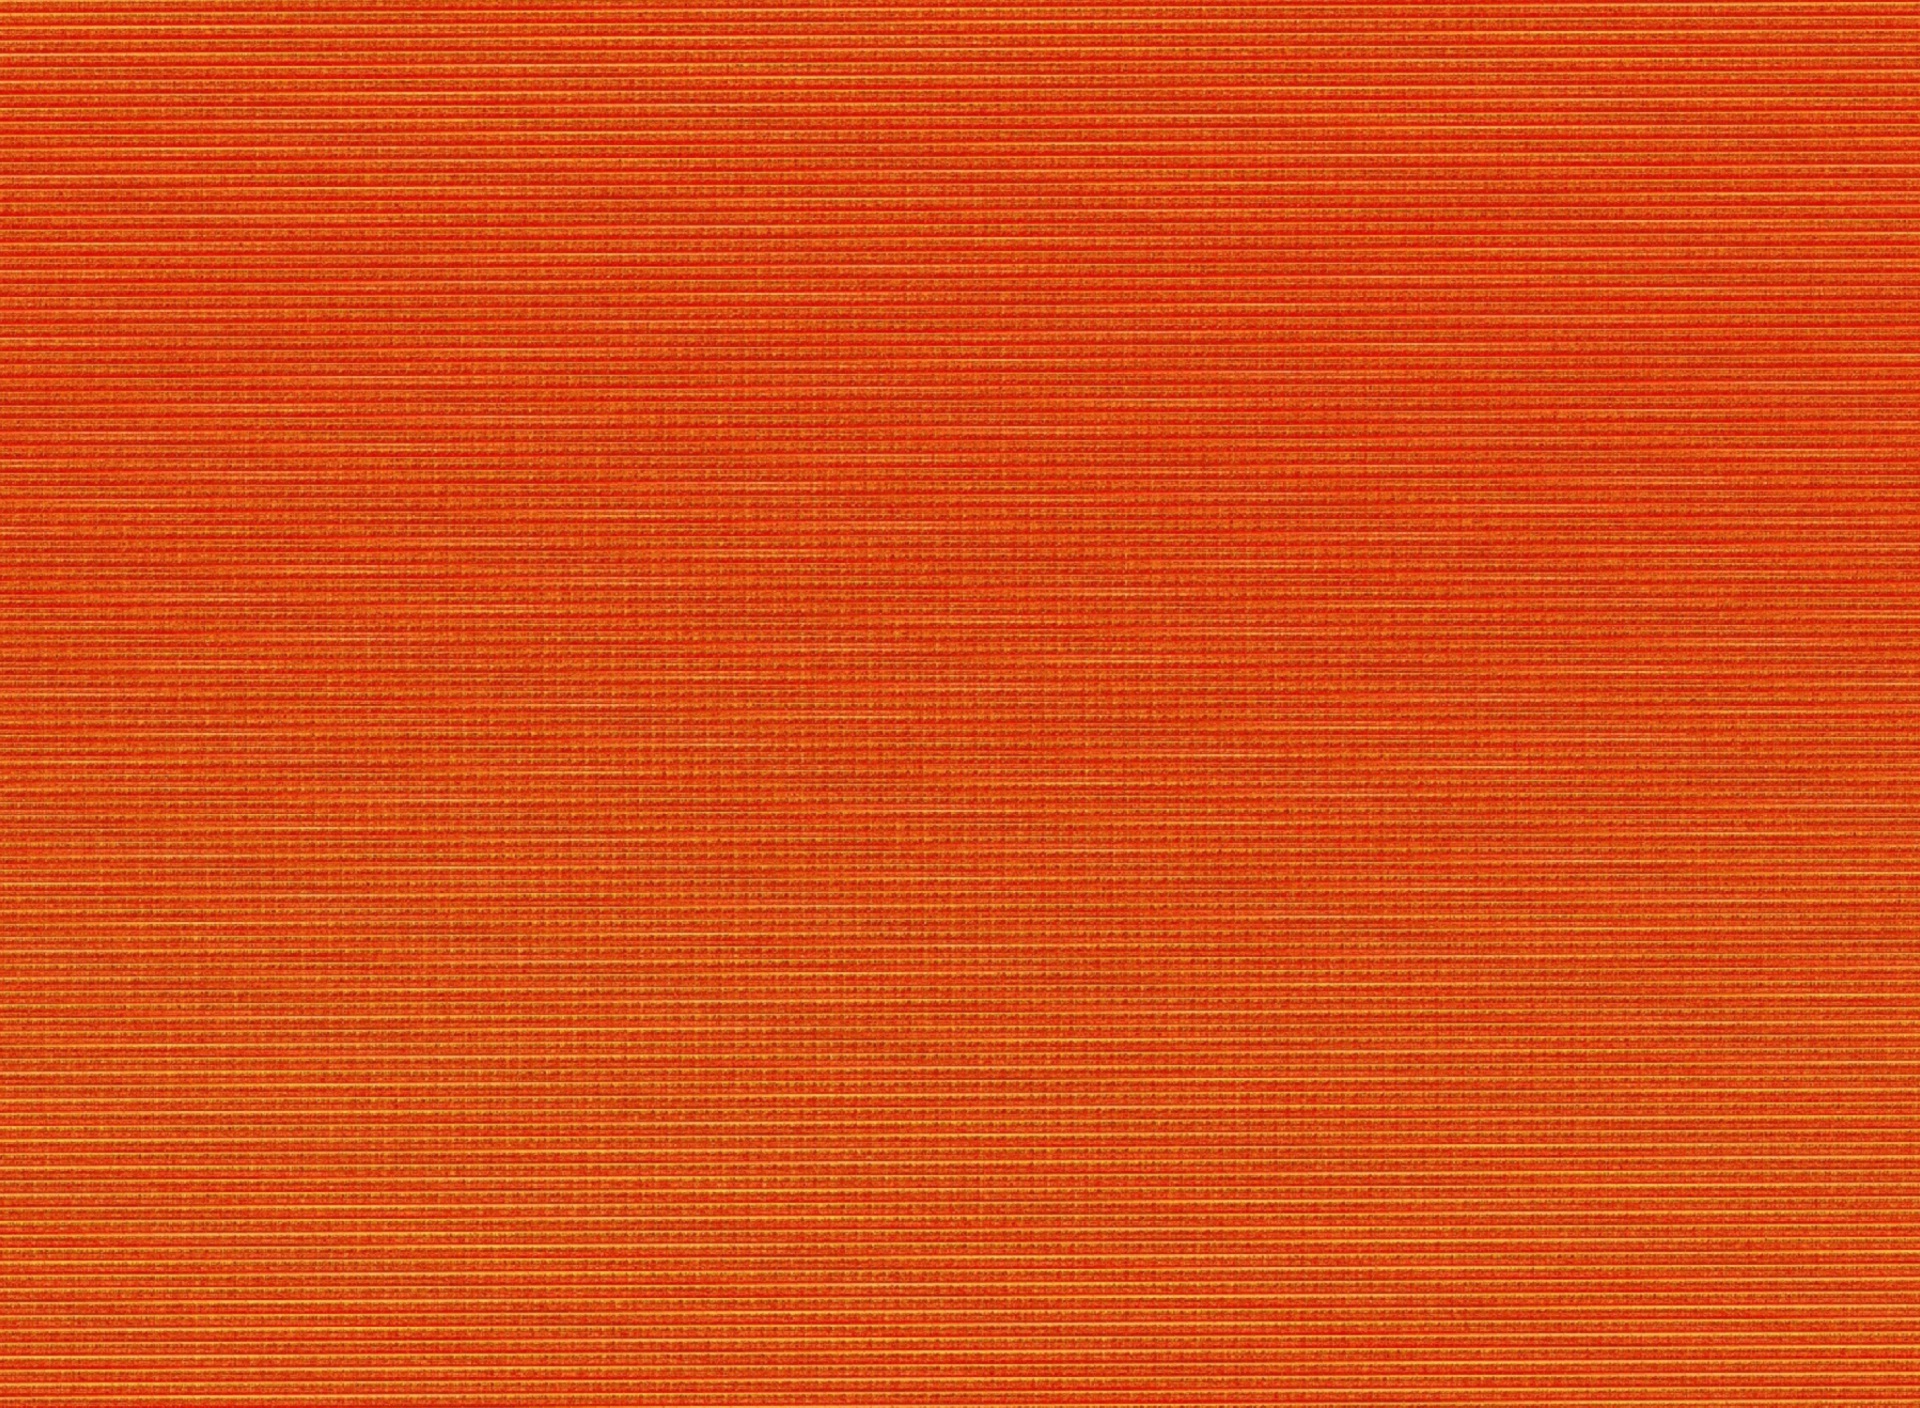 Orange texture screenshot #1 1920x1408